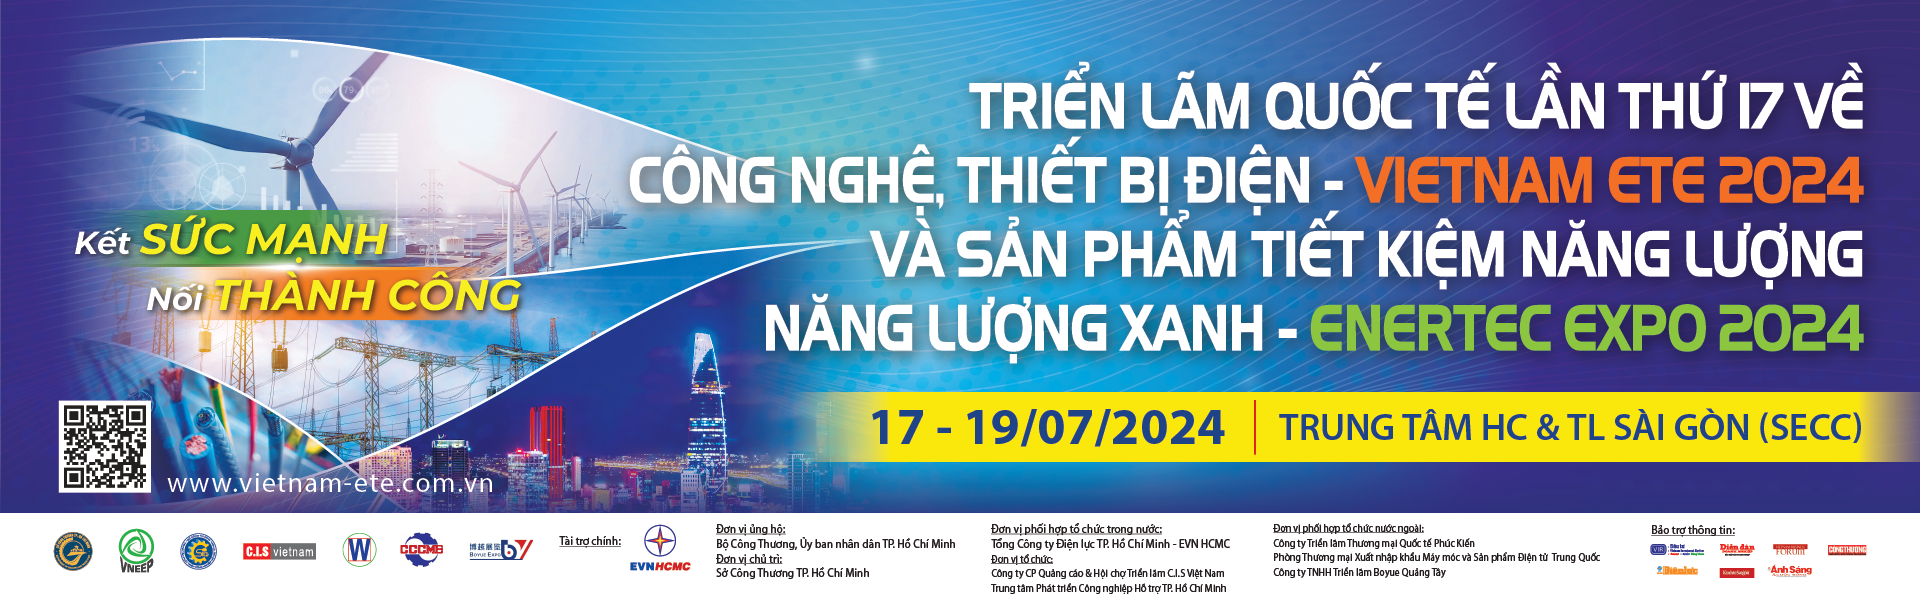 Triển lãm Quốc tế lần thứ 17 về Công nghệ, Thiết bị điện – Vietnam ETE 2024 và Sản phẩm Tiết kiệm Năng lượng, Năng lượng xanh – Enertec Expo 2024